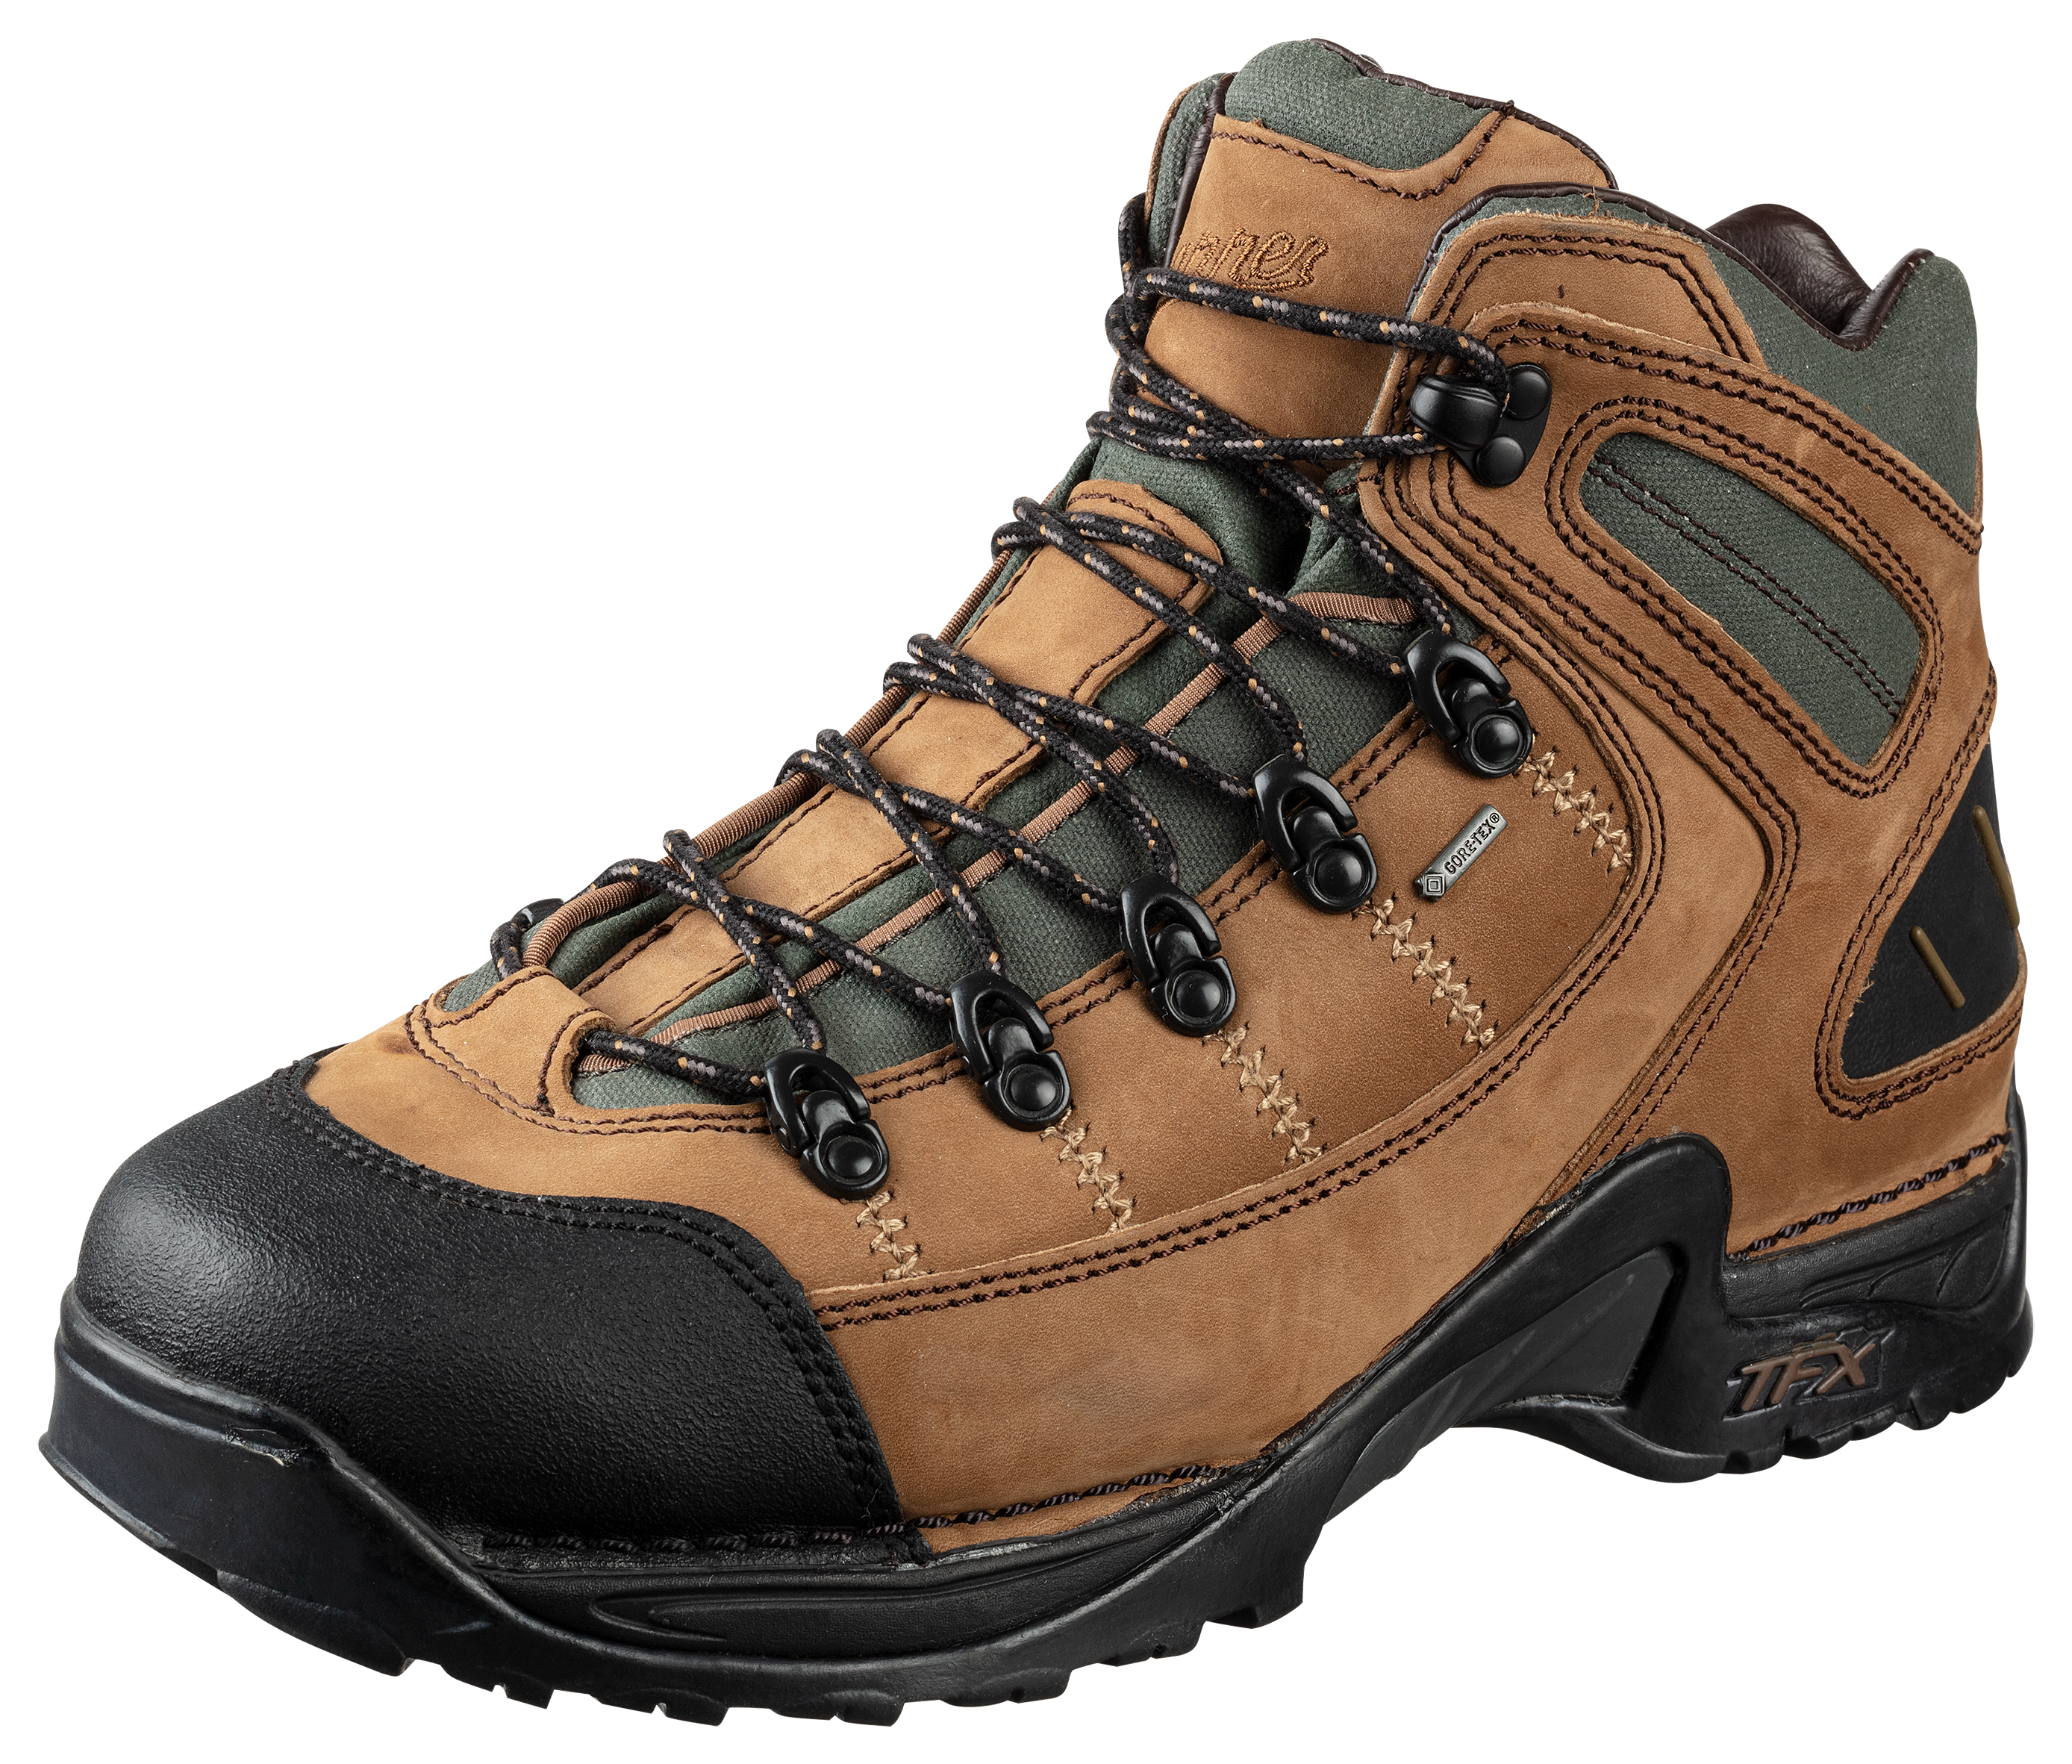 Danner 453 GORE-TEX Waterproof Hiking Boots for Men - Dark Tan - 10W